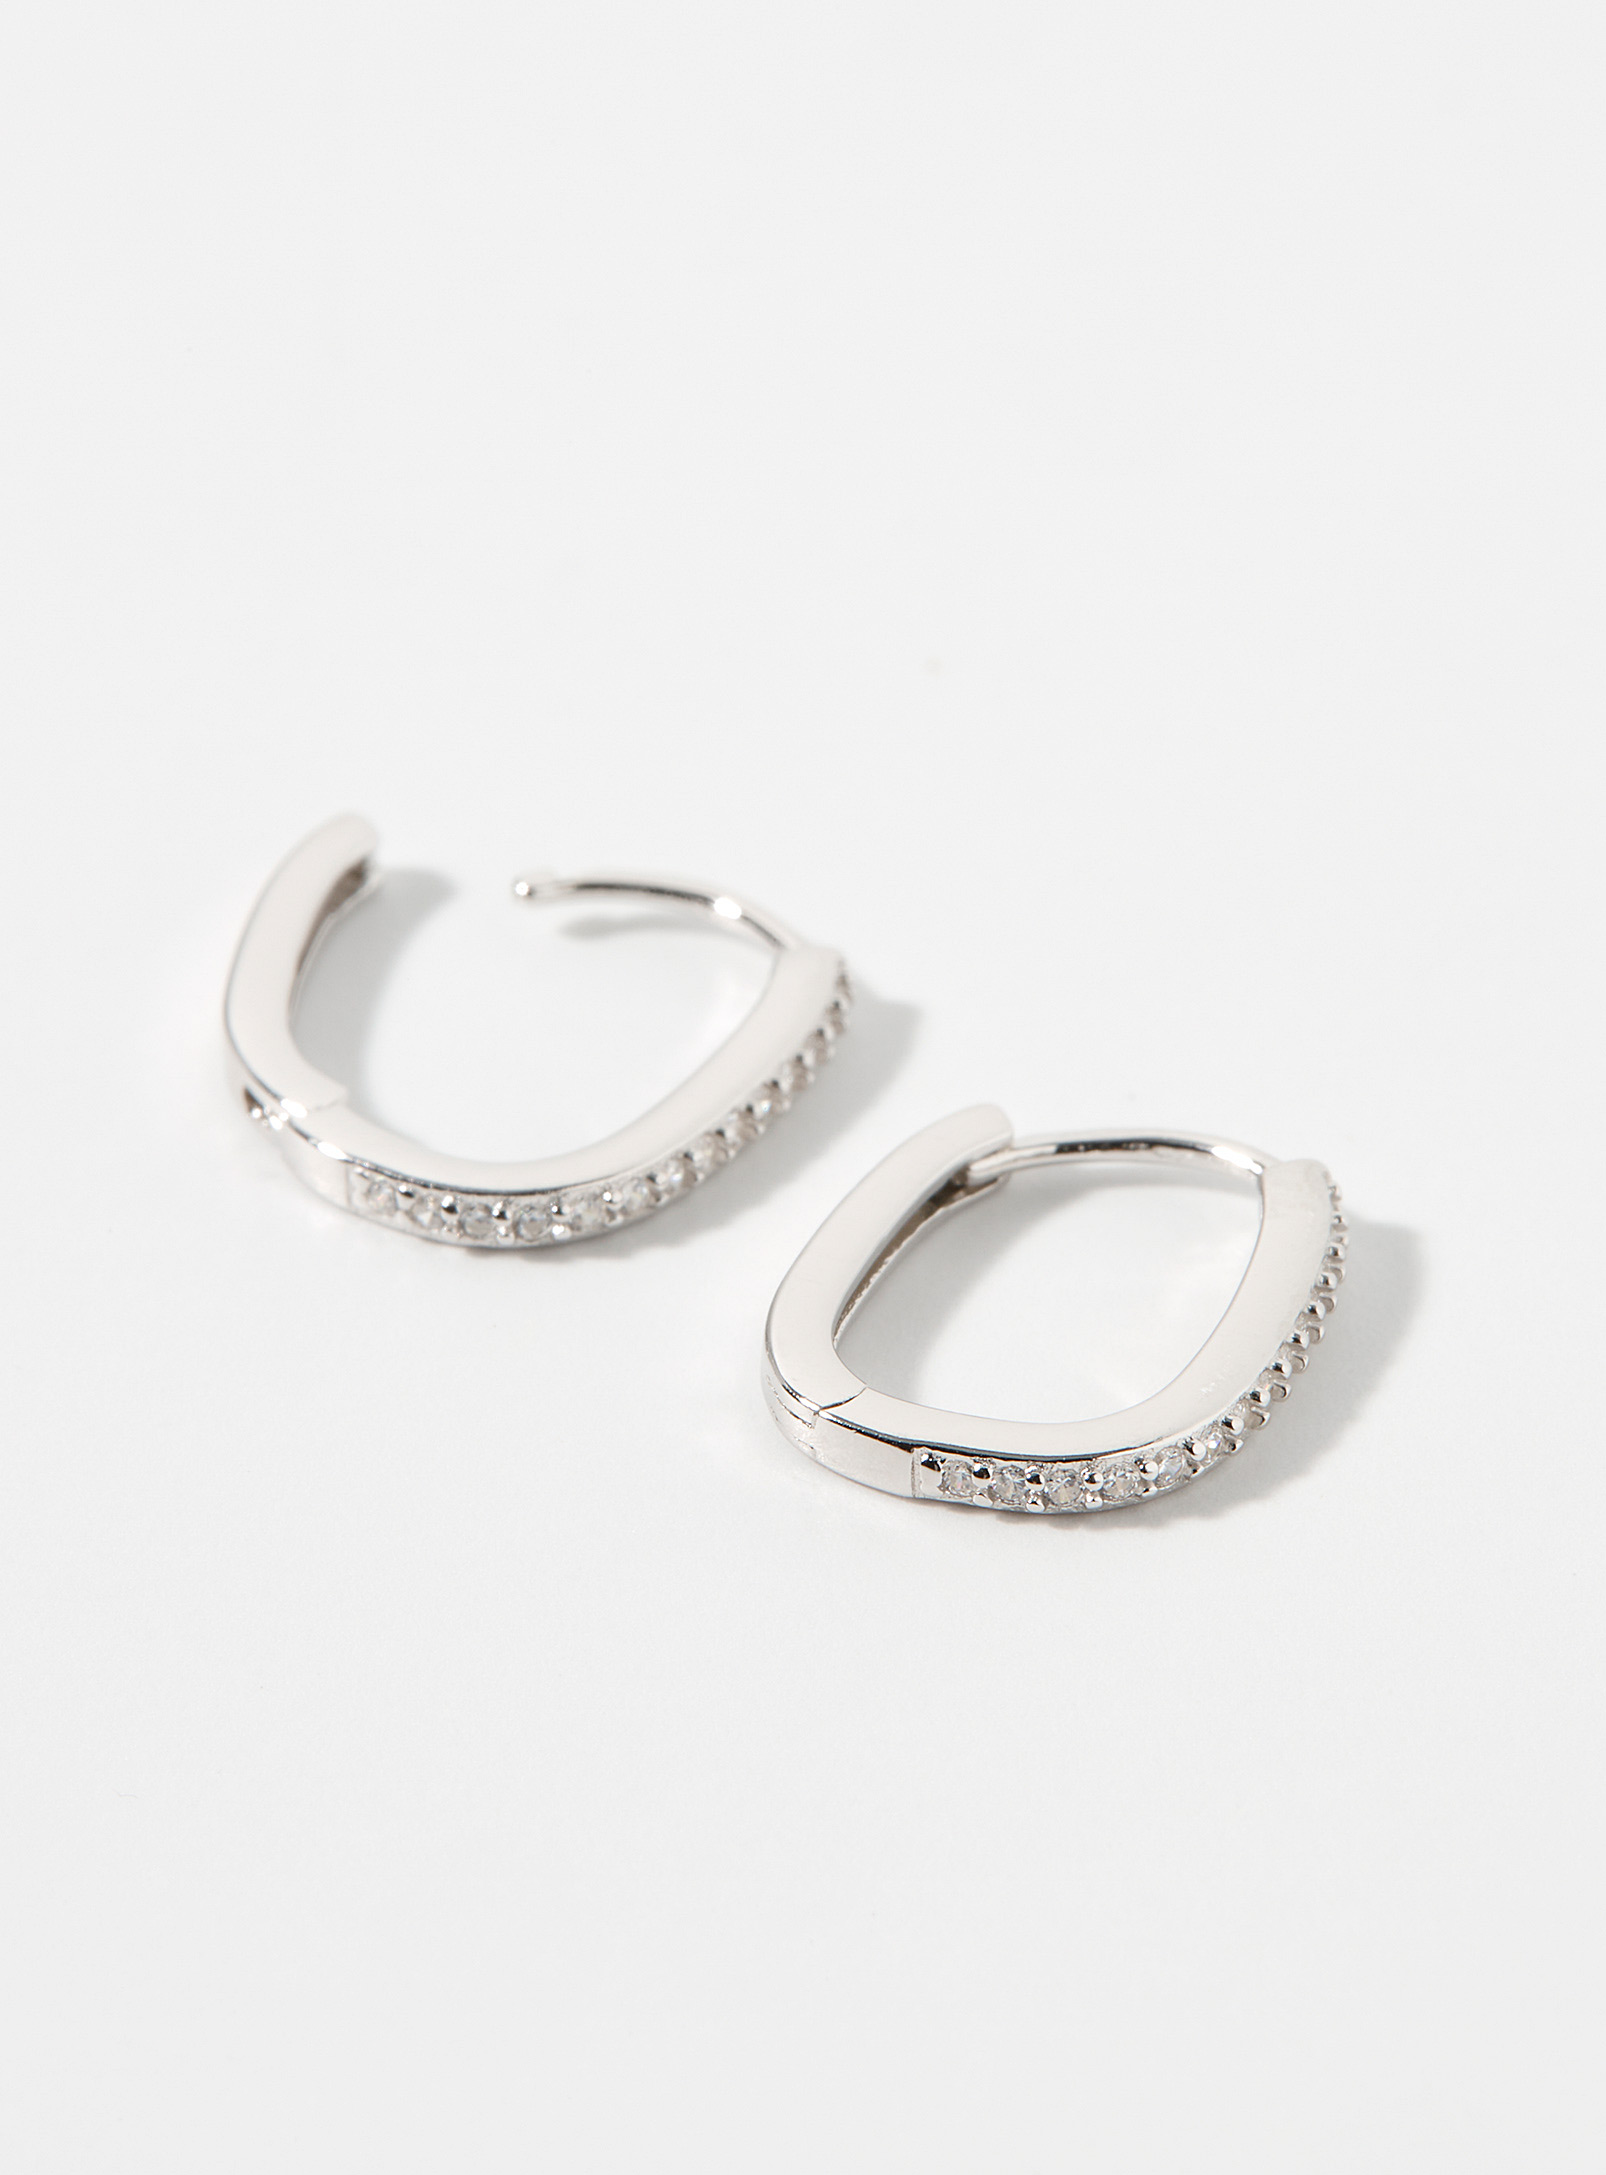 Simons - Les anneaux ovales cristaux argent